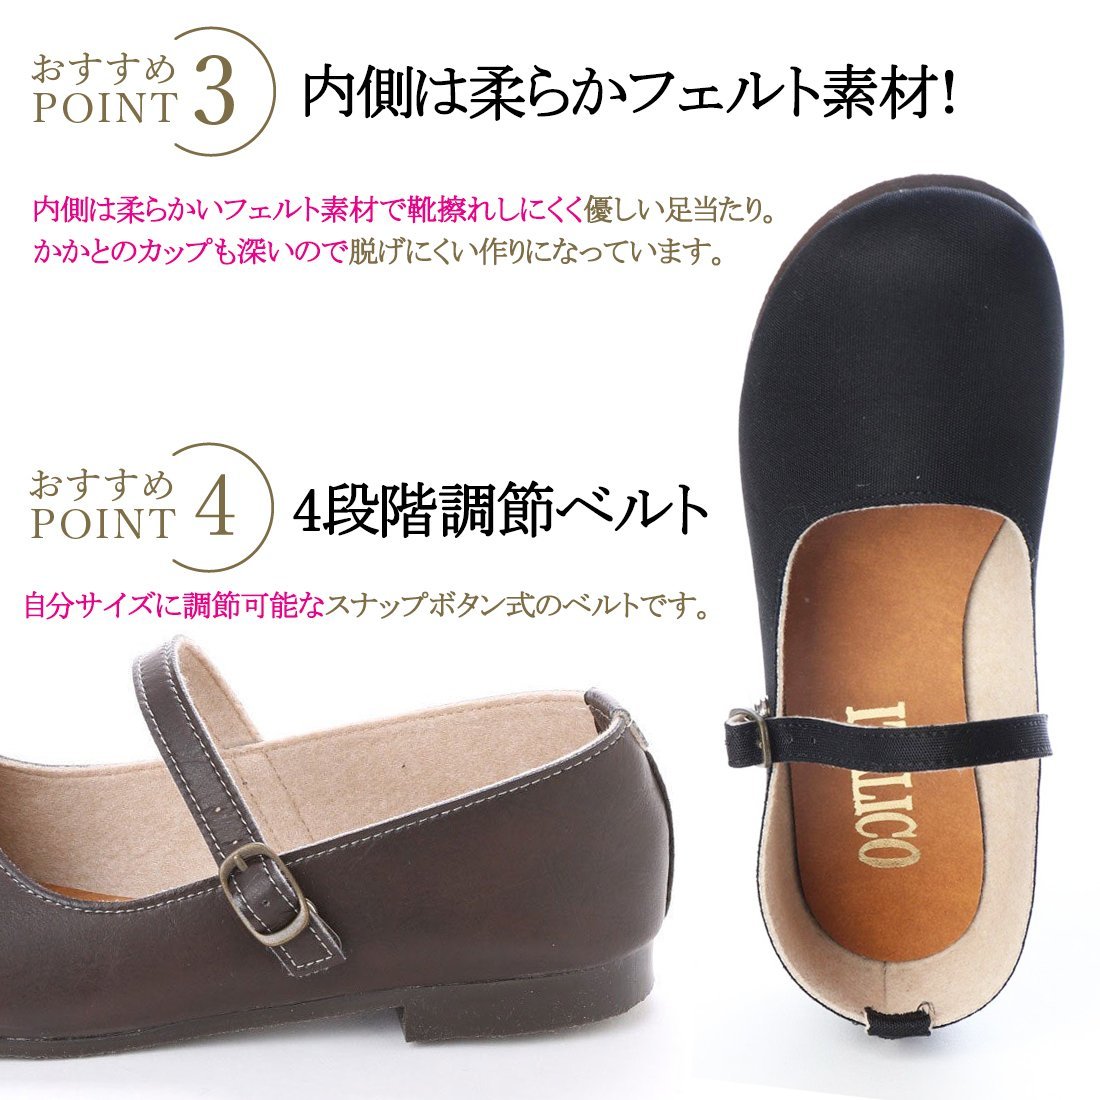 42lk бесплатная доставка по всей стране (25.5~26cm) сделано в Японии one ремешок туфли-лодочки / Brown 